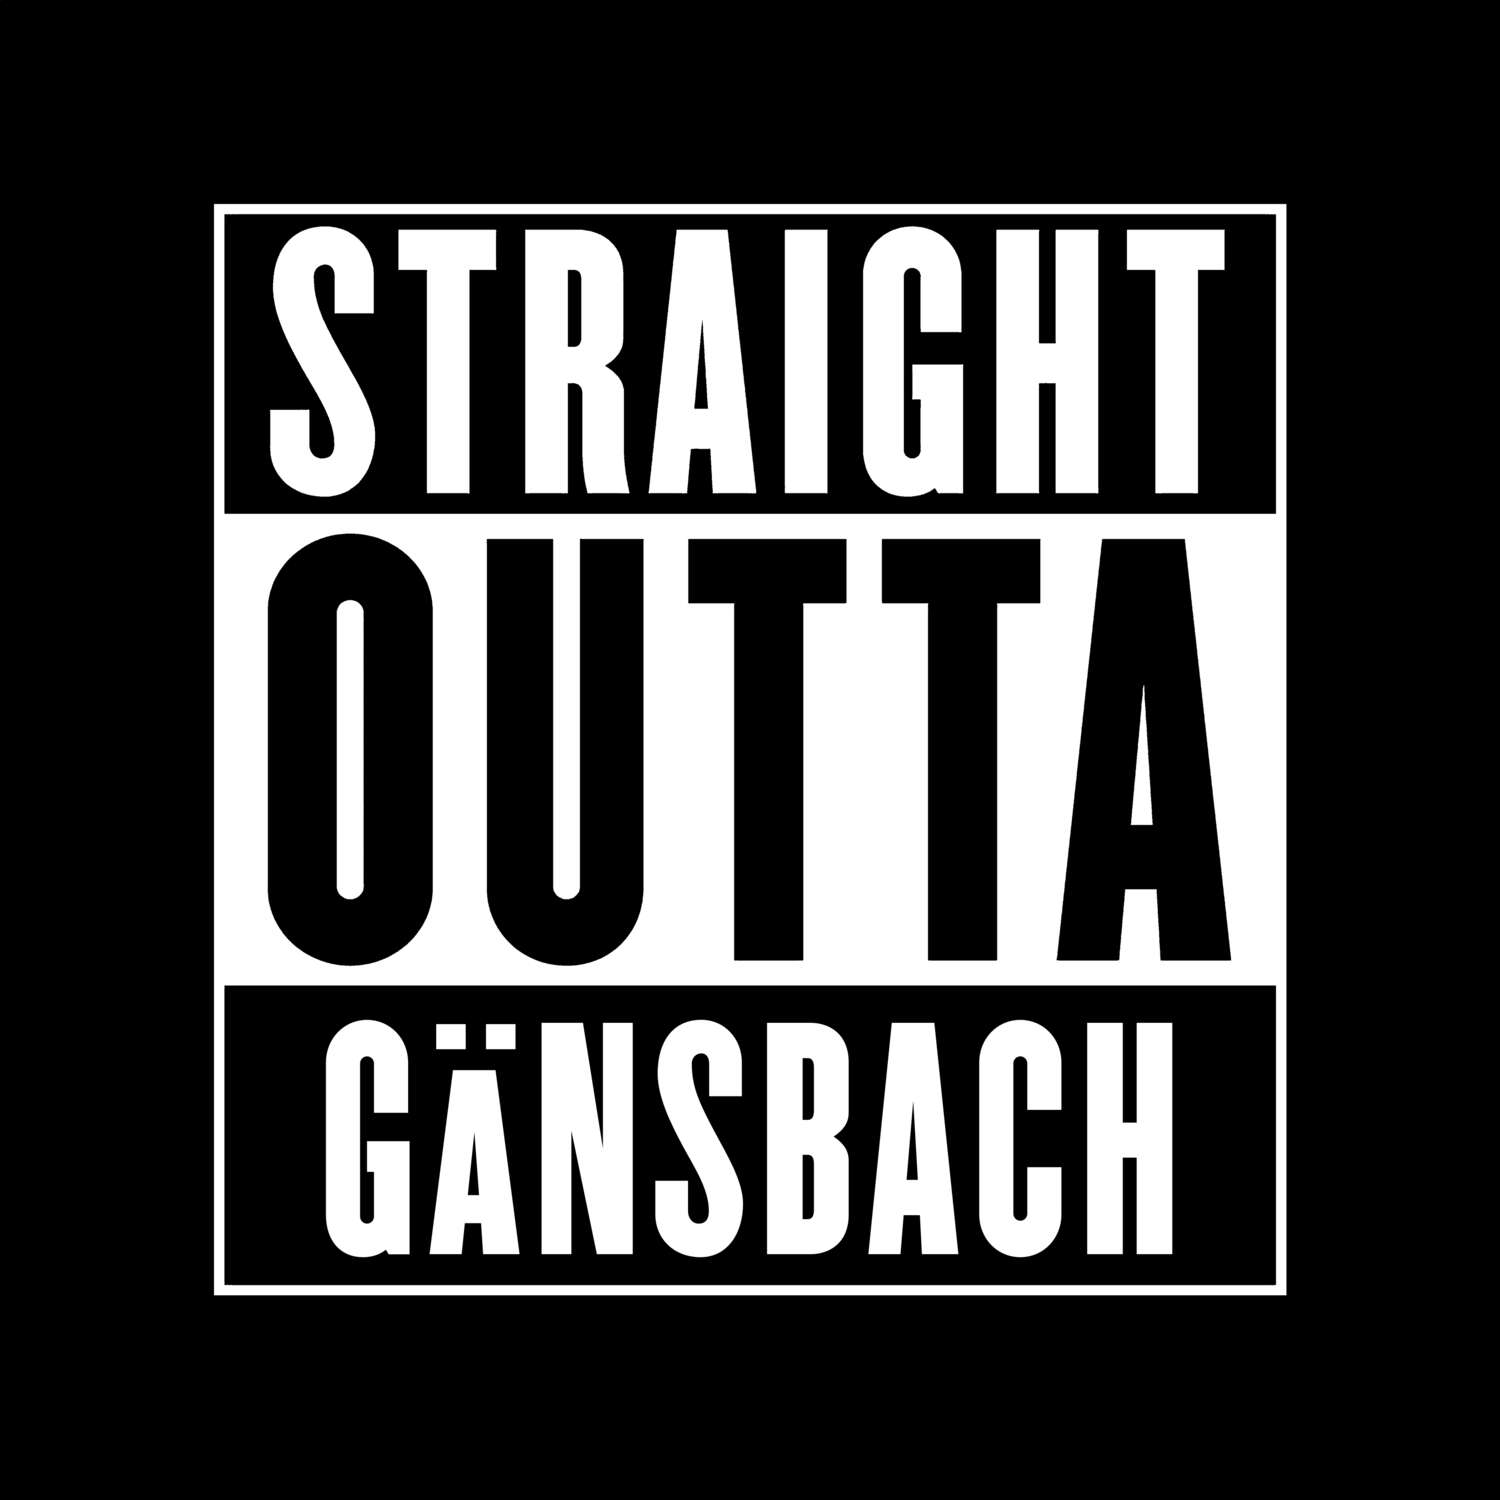 Gänsbach T-Shirt »Straight Outta«